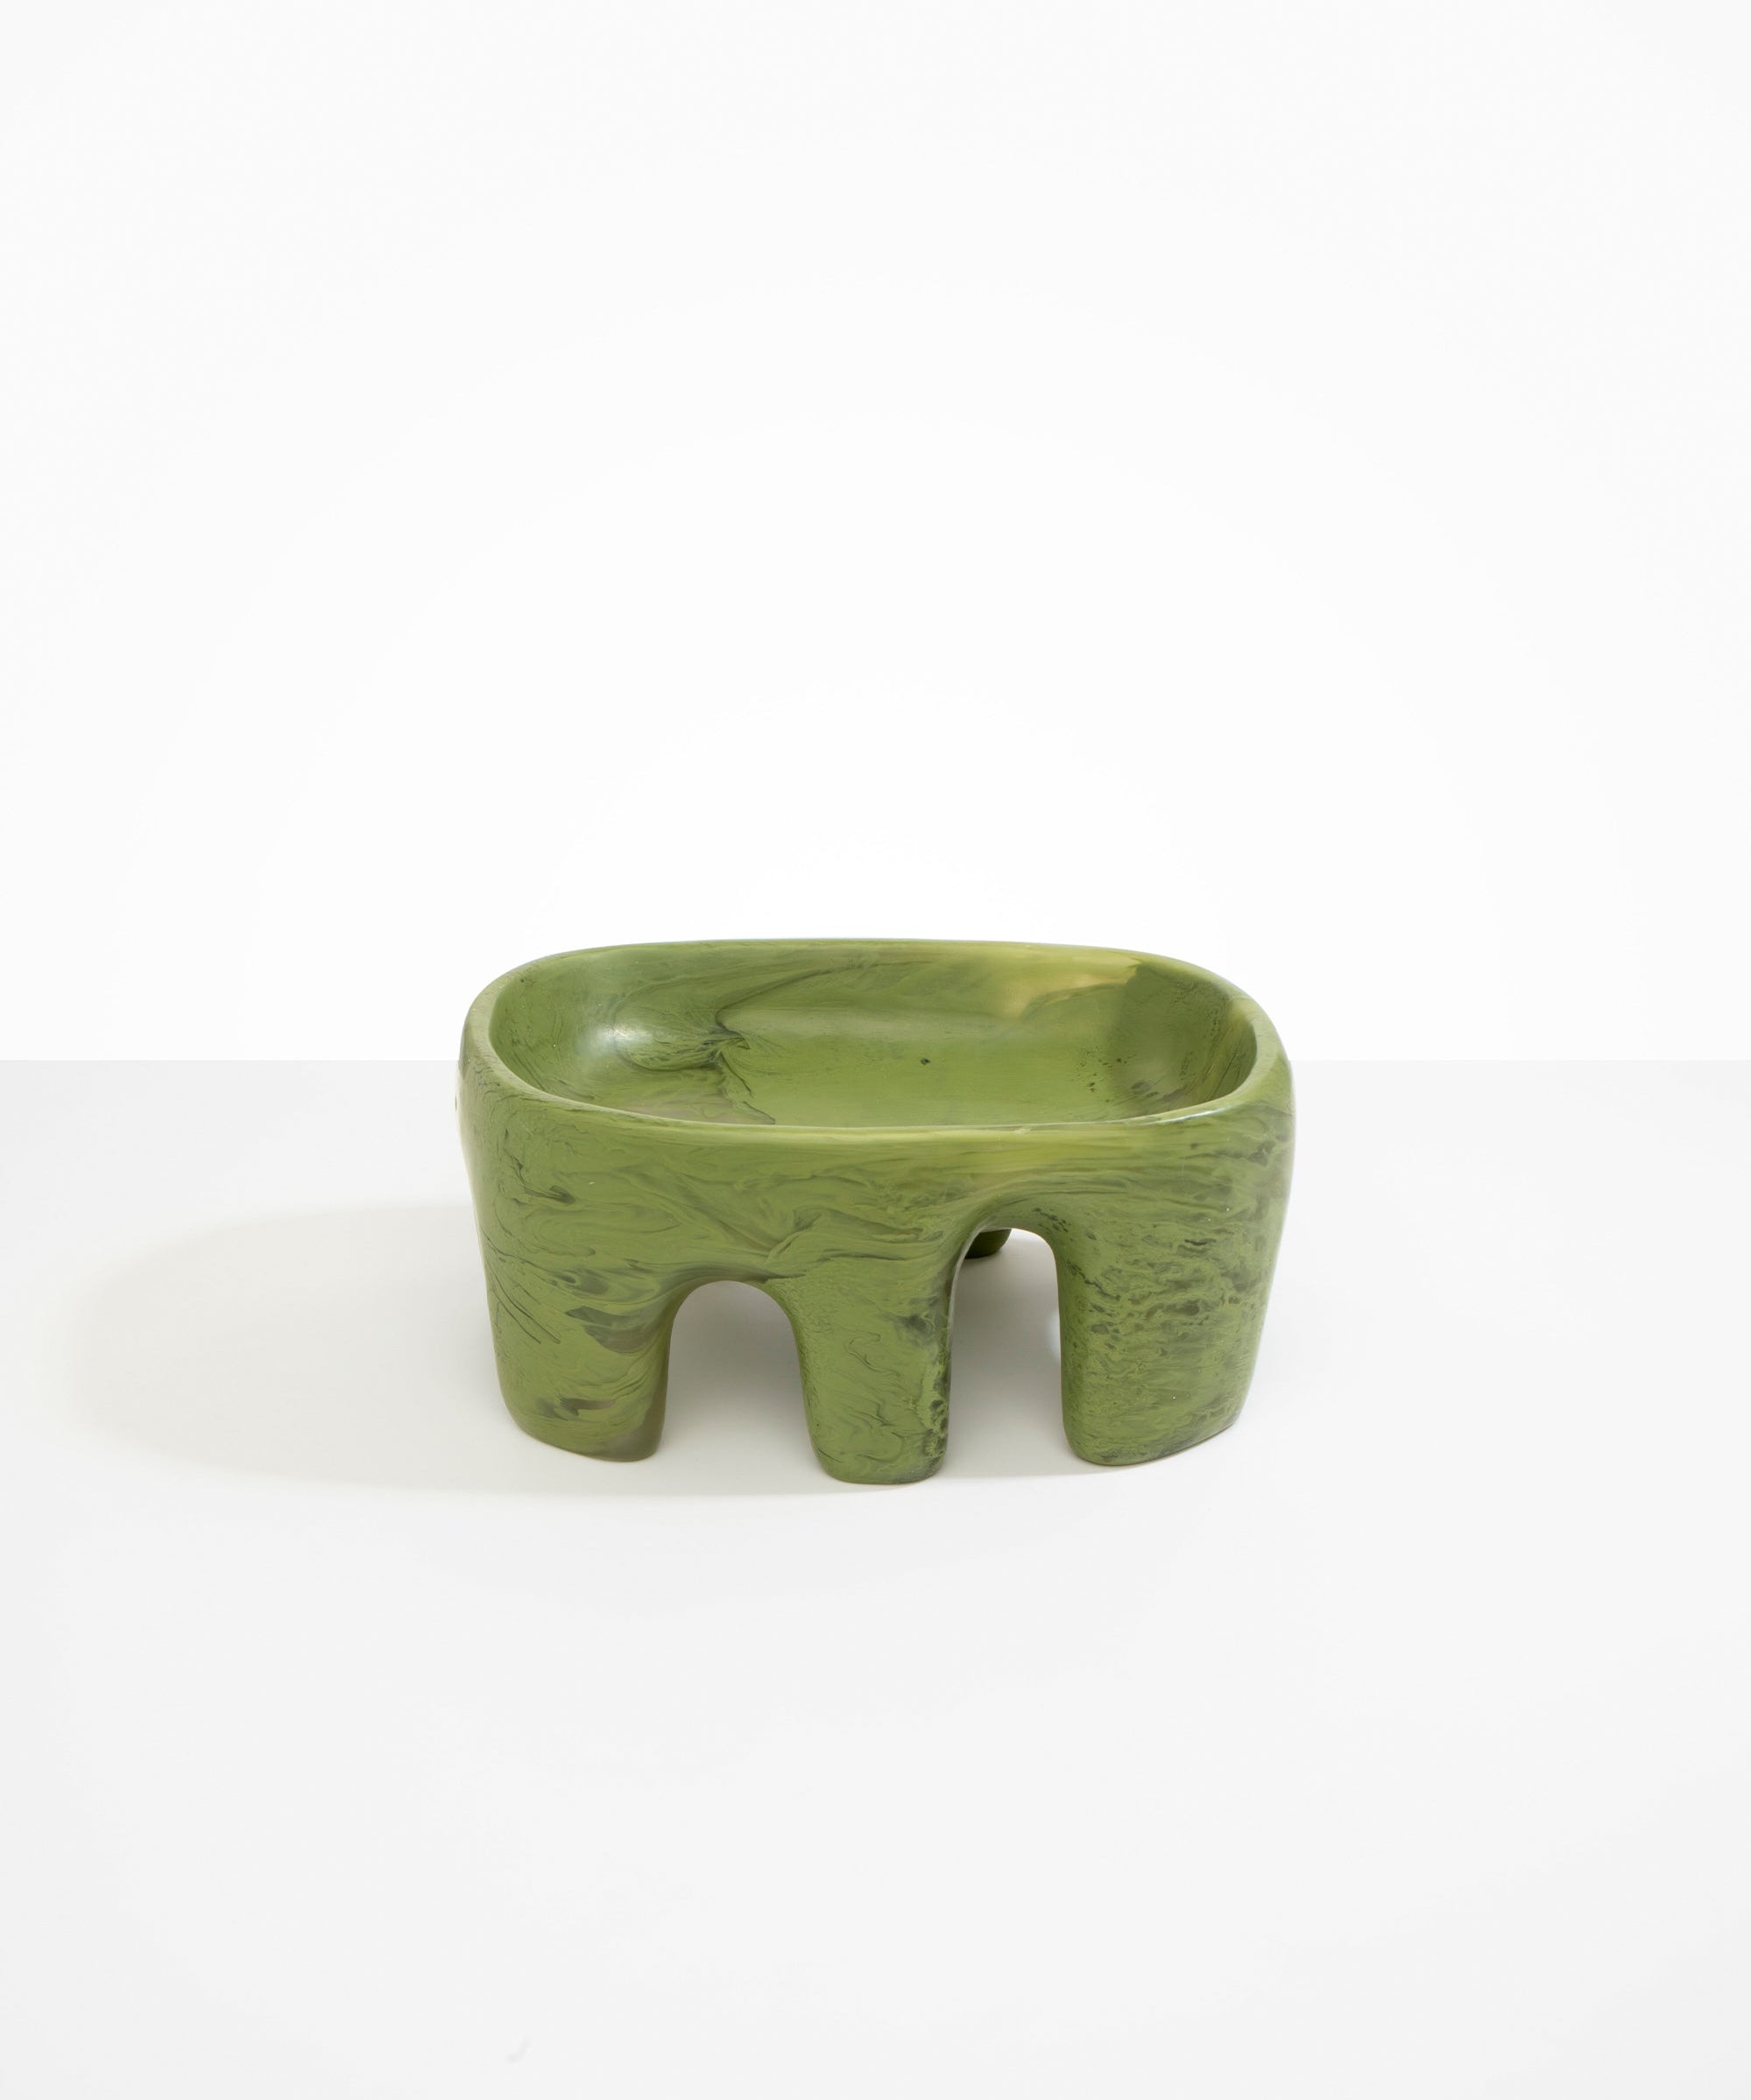 Dinosaur Designs Large Branch Bowl Bowls in Olive color resin